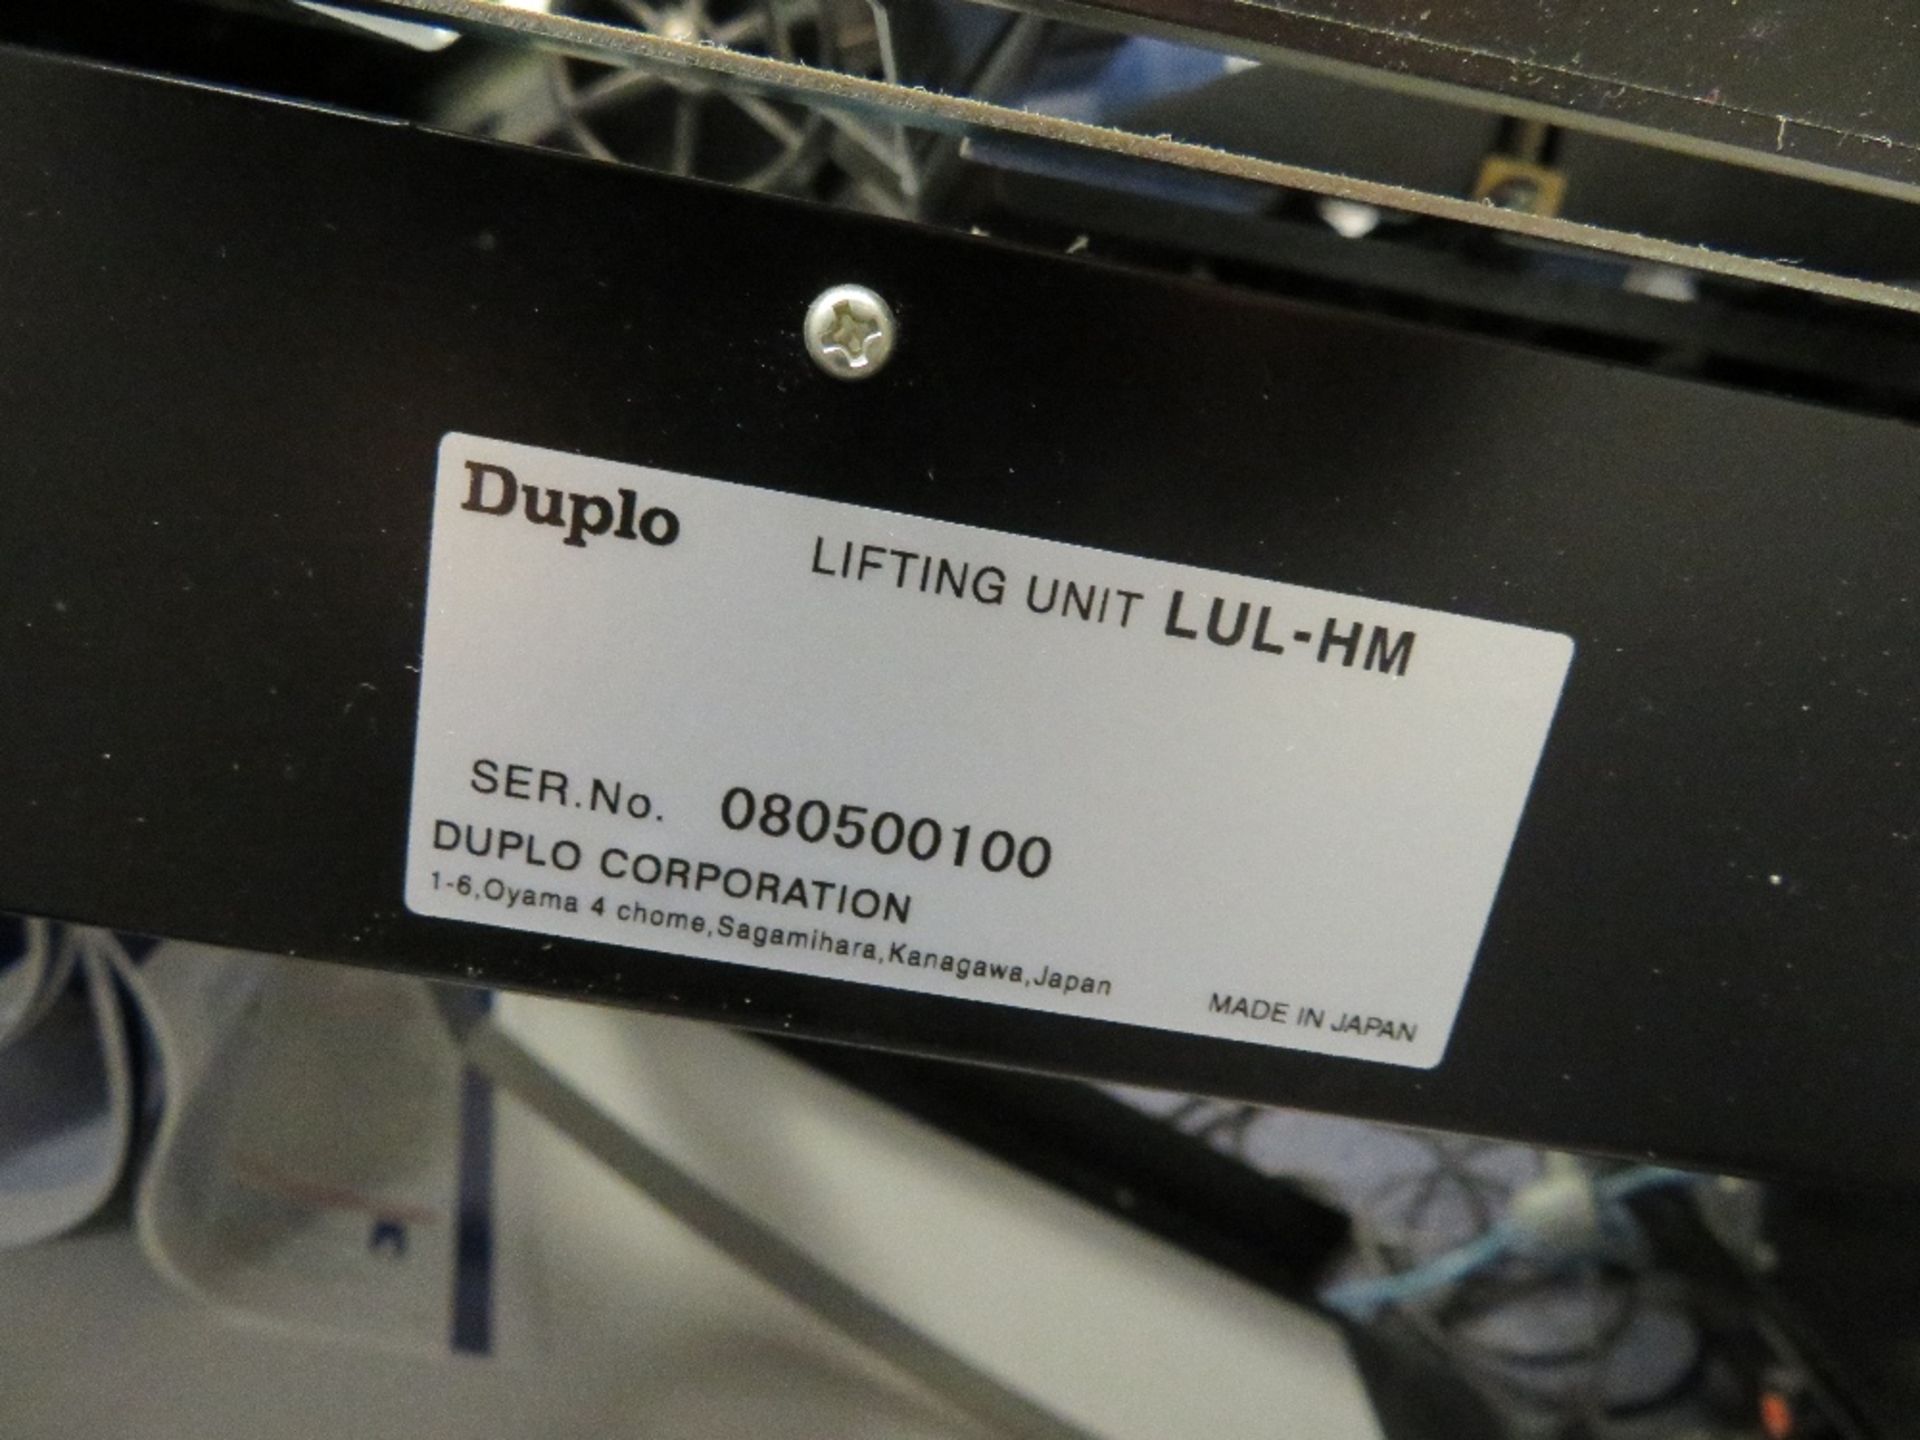 Duplo System 5000 Booklet Making Line, Serial Number 080800341 (December 2008) Comprising: DBM-500 - Image 12 of 18